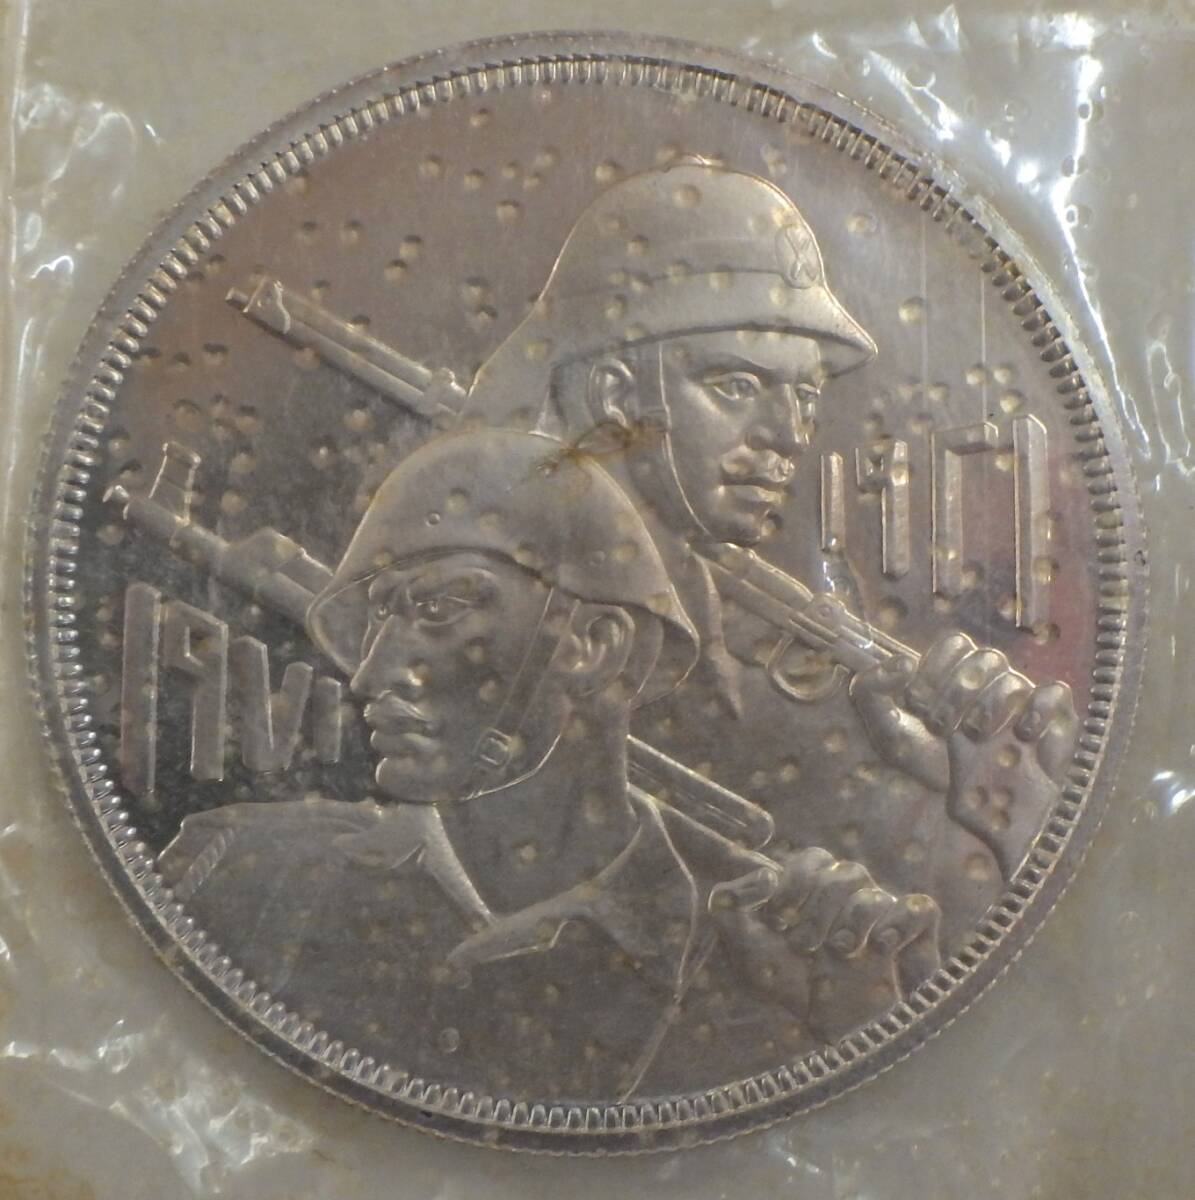 ◇イラク 大型銀貨◇1971年 1ディナール銀貨 GOLDEN JUBILEE OF IRAQI ARMY 約4cm 約31.8g(カバー含)   ケース入の画像4